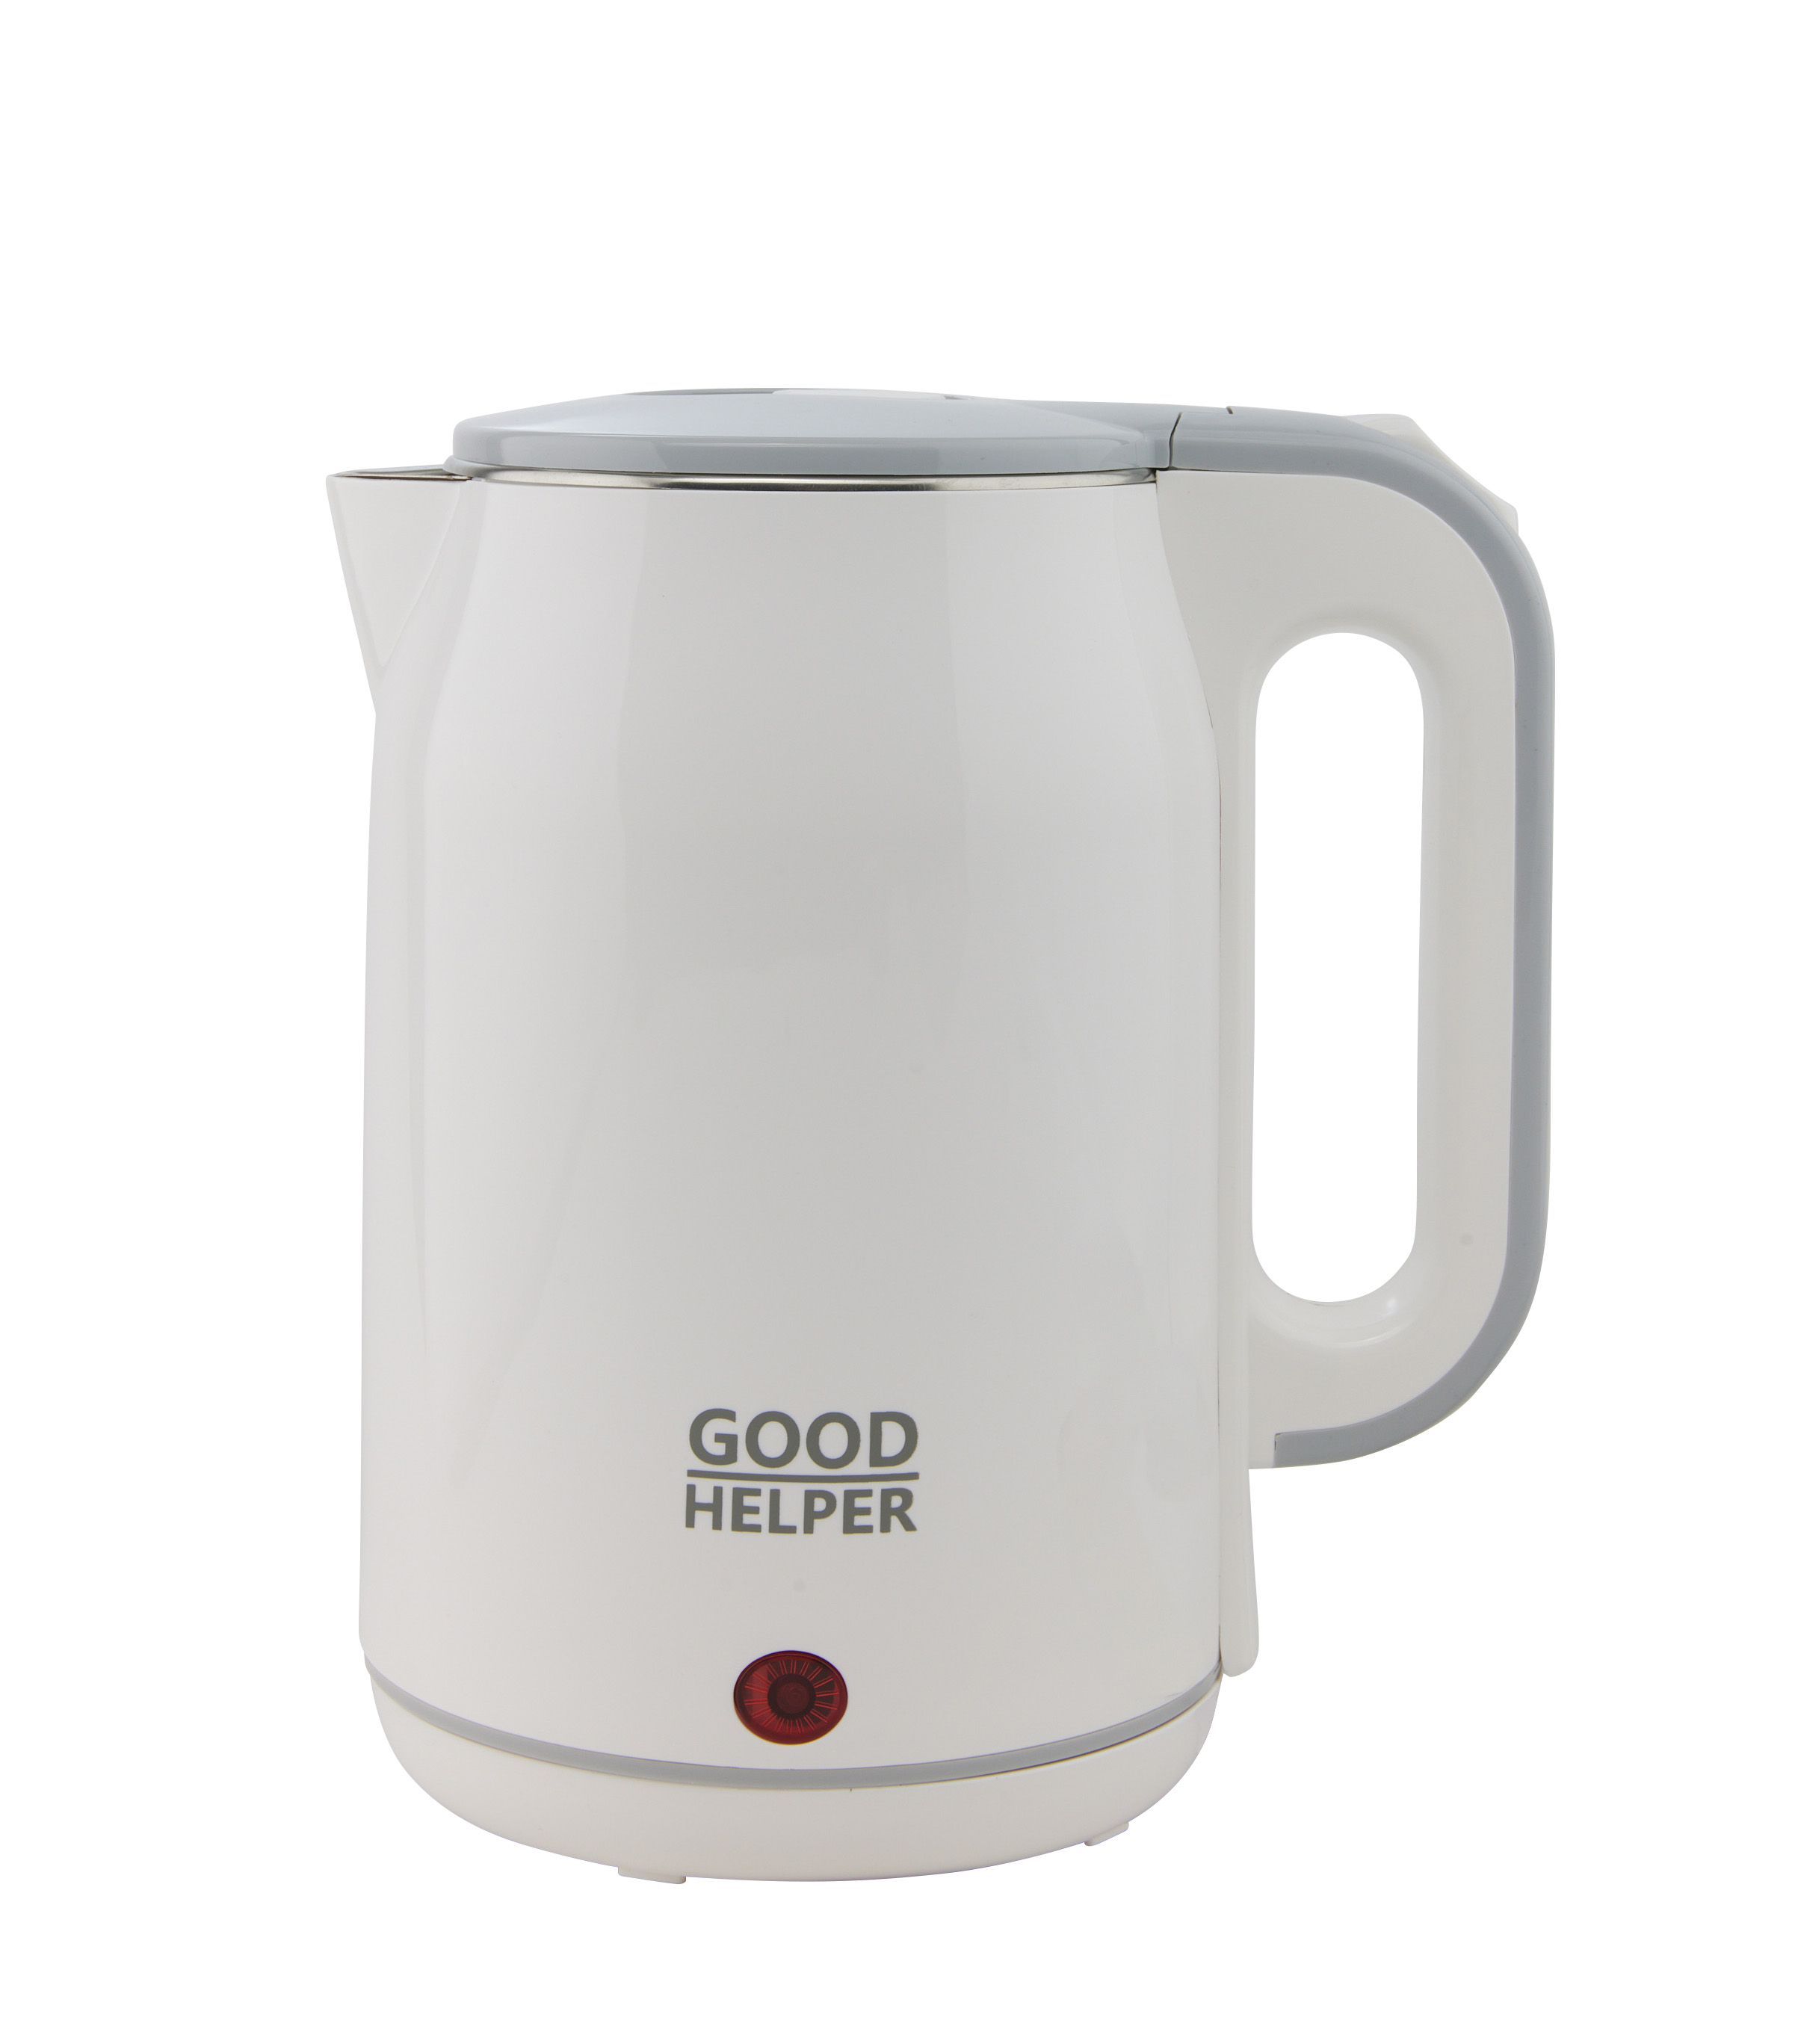 фото: Доступное качество: новый электрический чайник GoodHelper KPS-184C